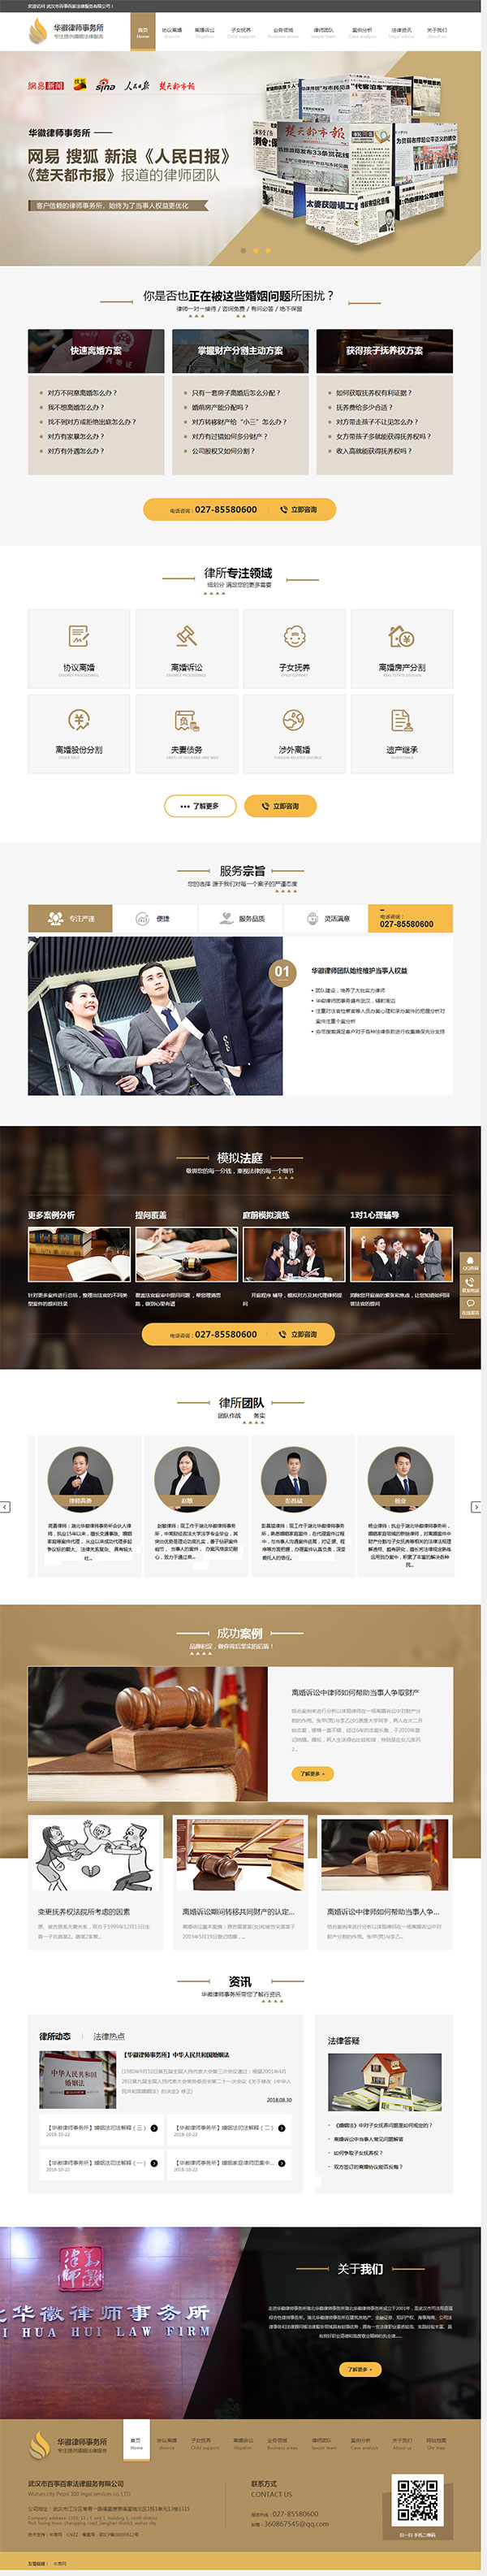 华徽律师事务所营销型网站首页截图